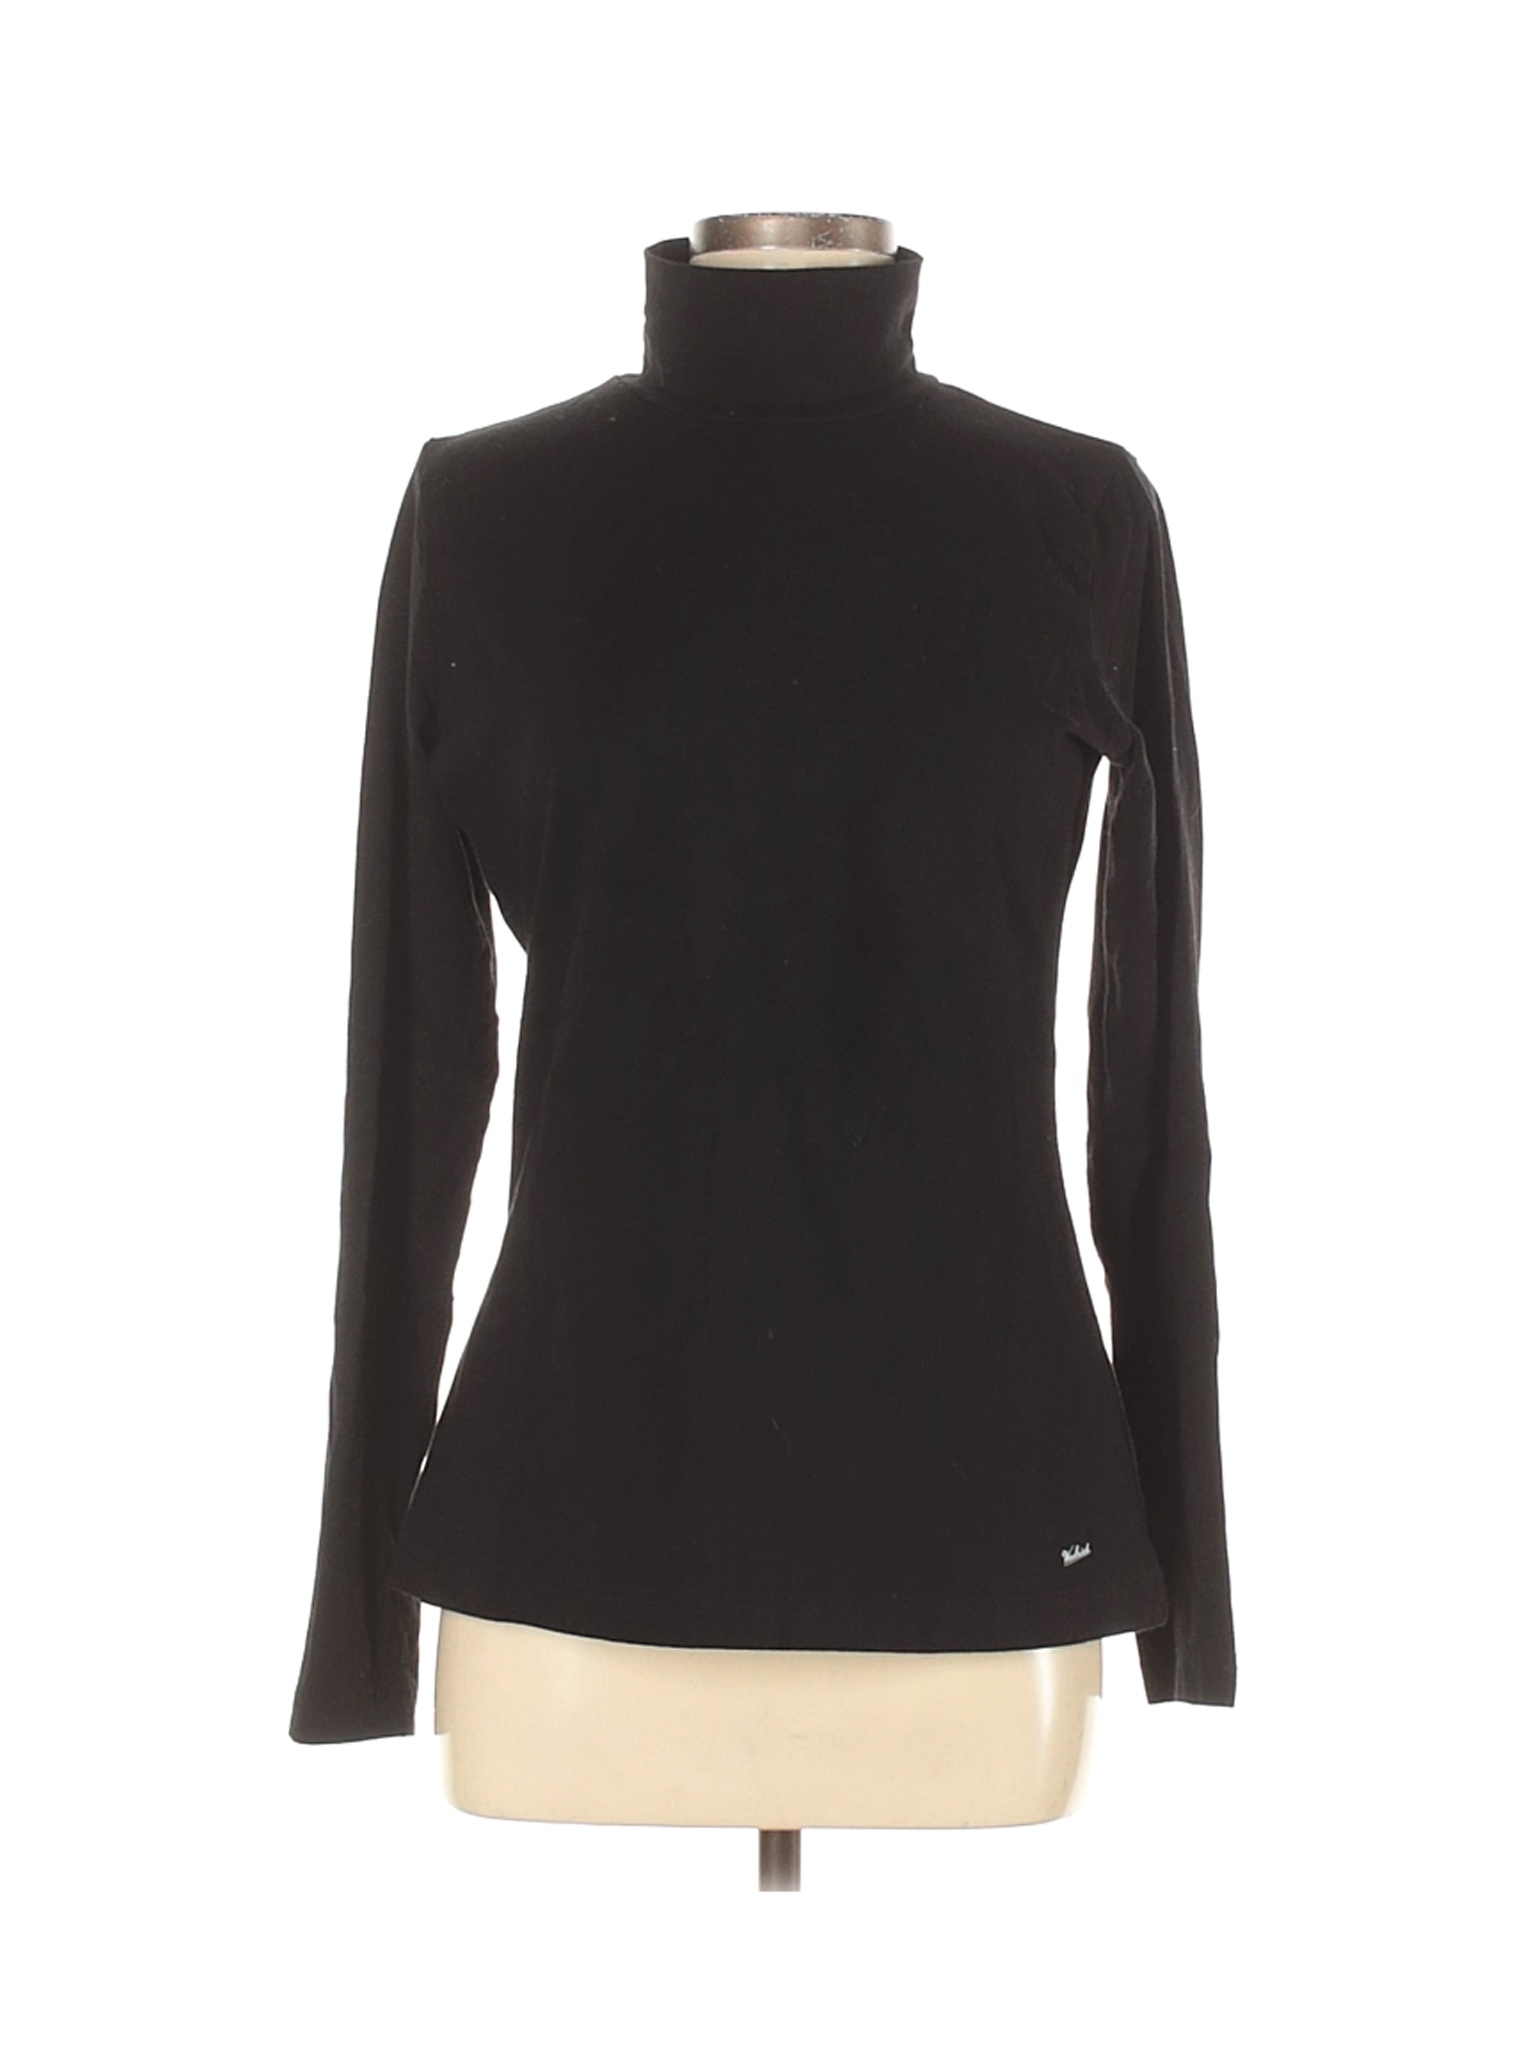 Woolrich Women Black Long Sleeve Turtleneck M | eBay